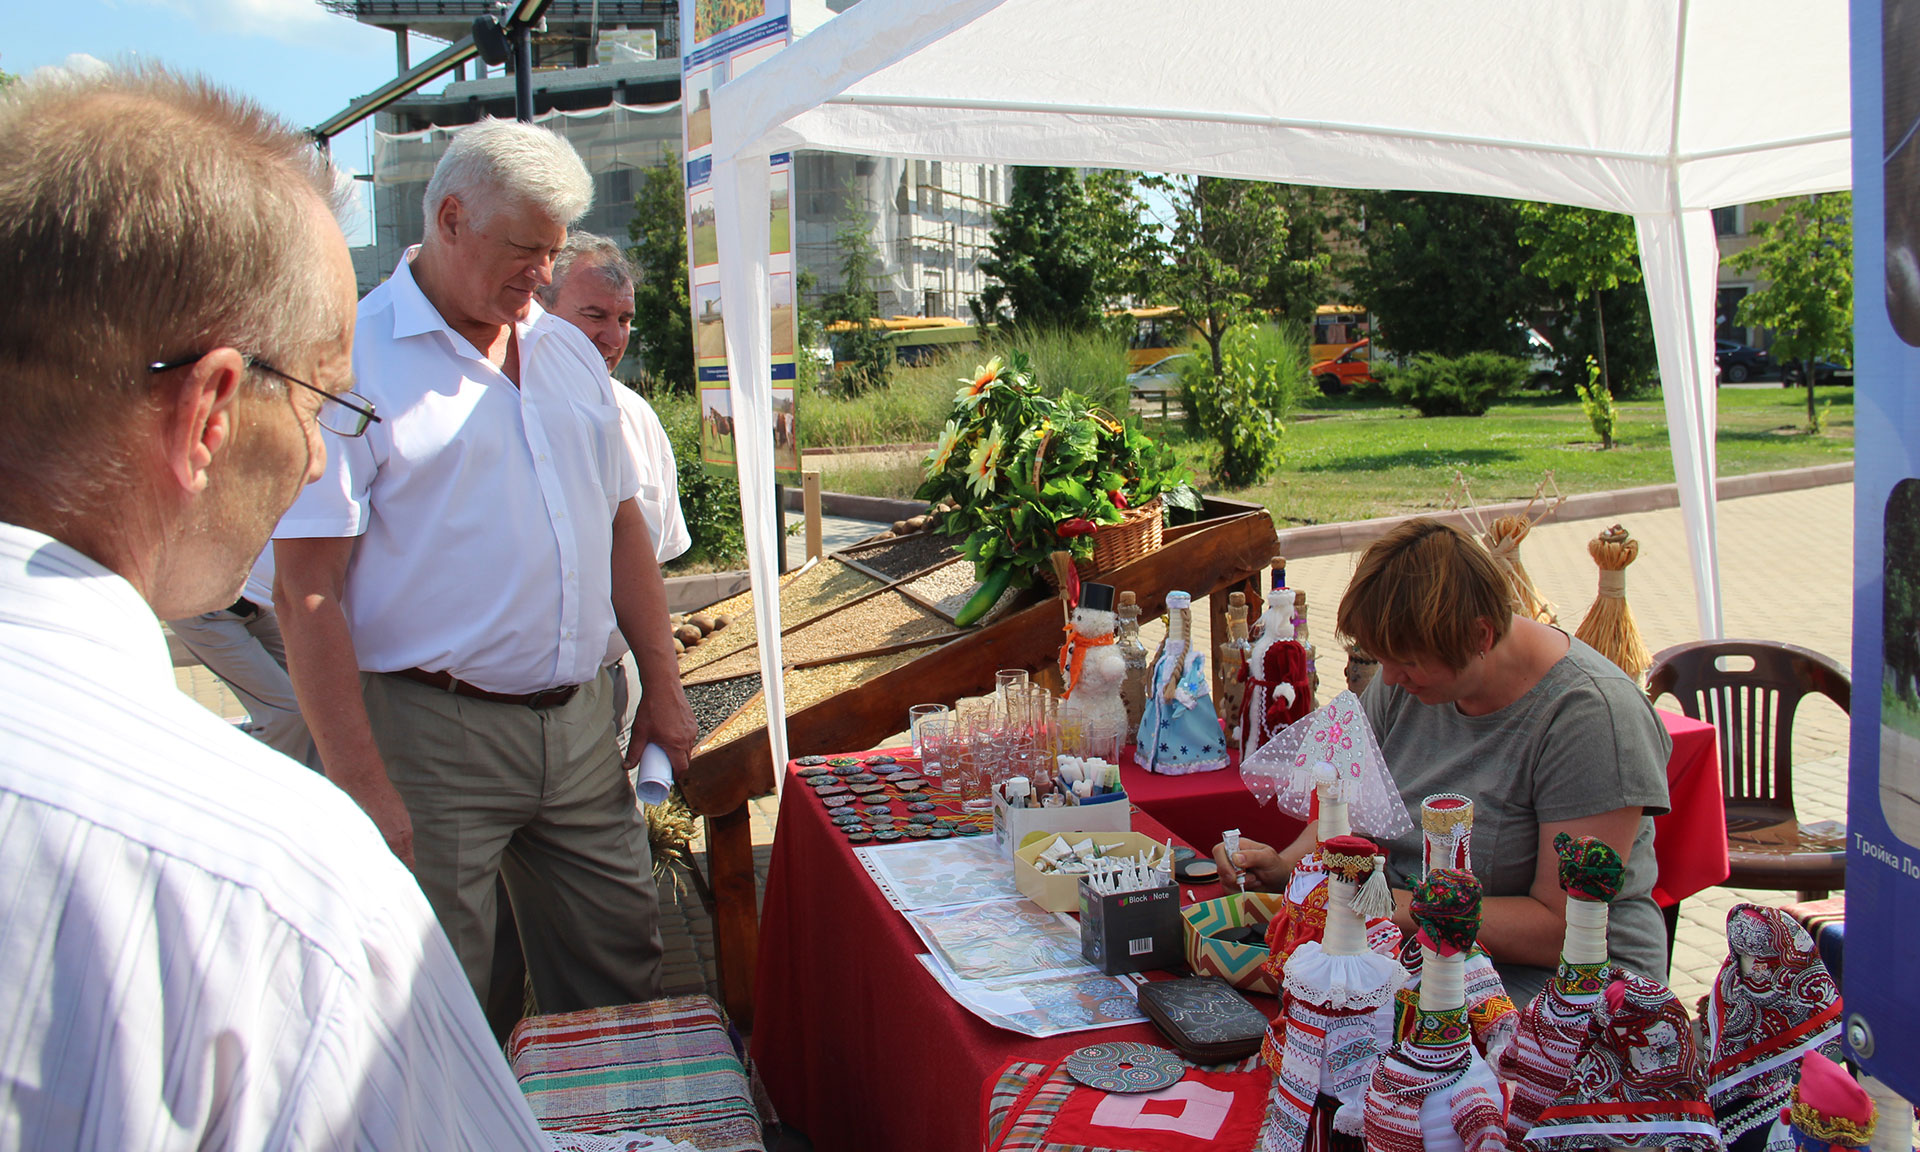 Брасовский район угощал гостей фестиваля булочками, пирожками, караваями, прохладительными напитками, а также мясными изделиями